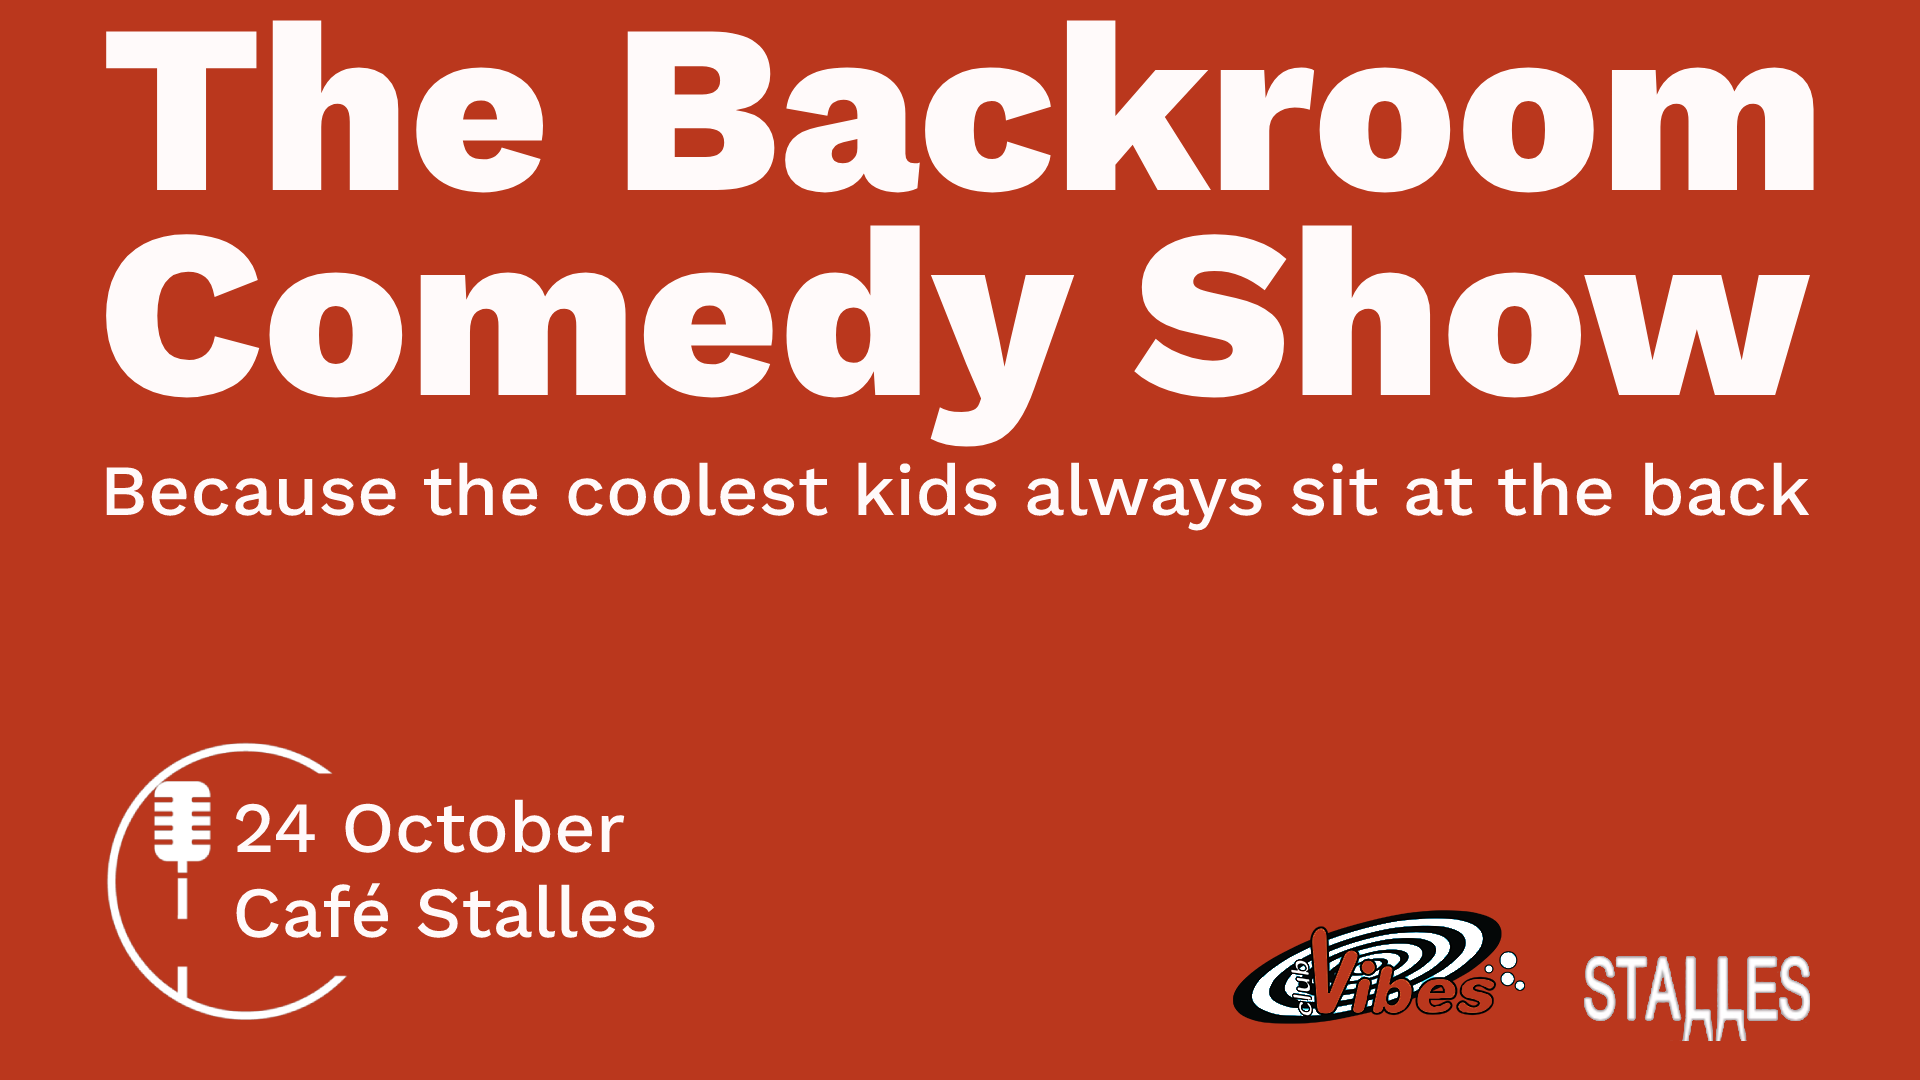 Ticket kopen voor evenement The Backroom Comedy Show